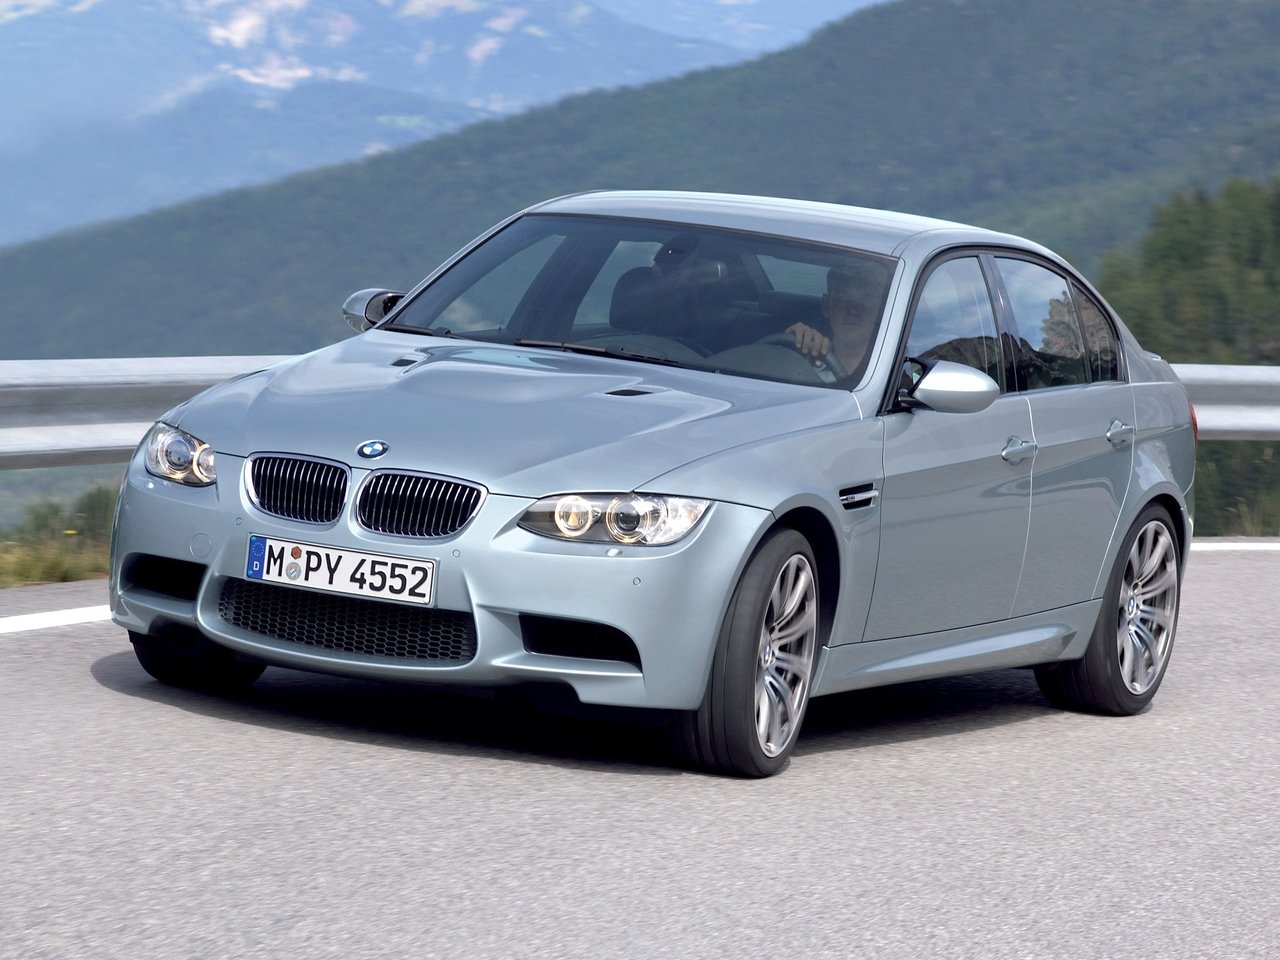 Расход газа двух комплектаций седана BMW M3. Разница стоимости заправки газом и бензином. Автономный пробег до и после установки ГБО.